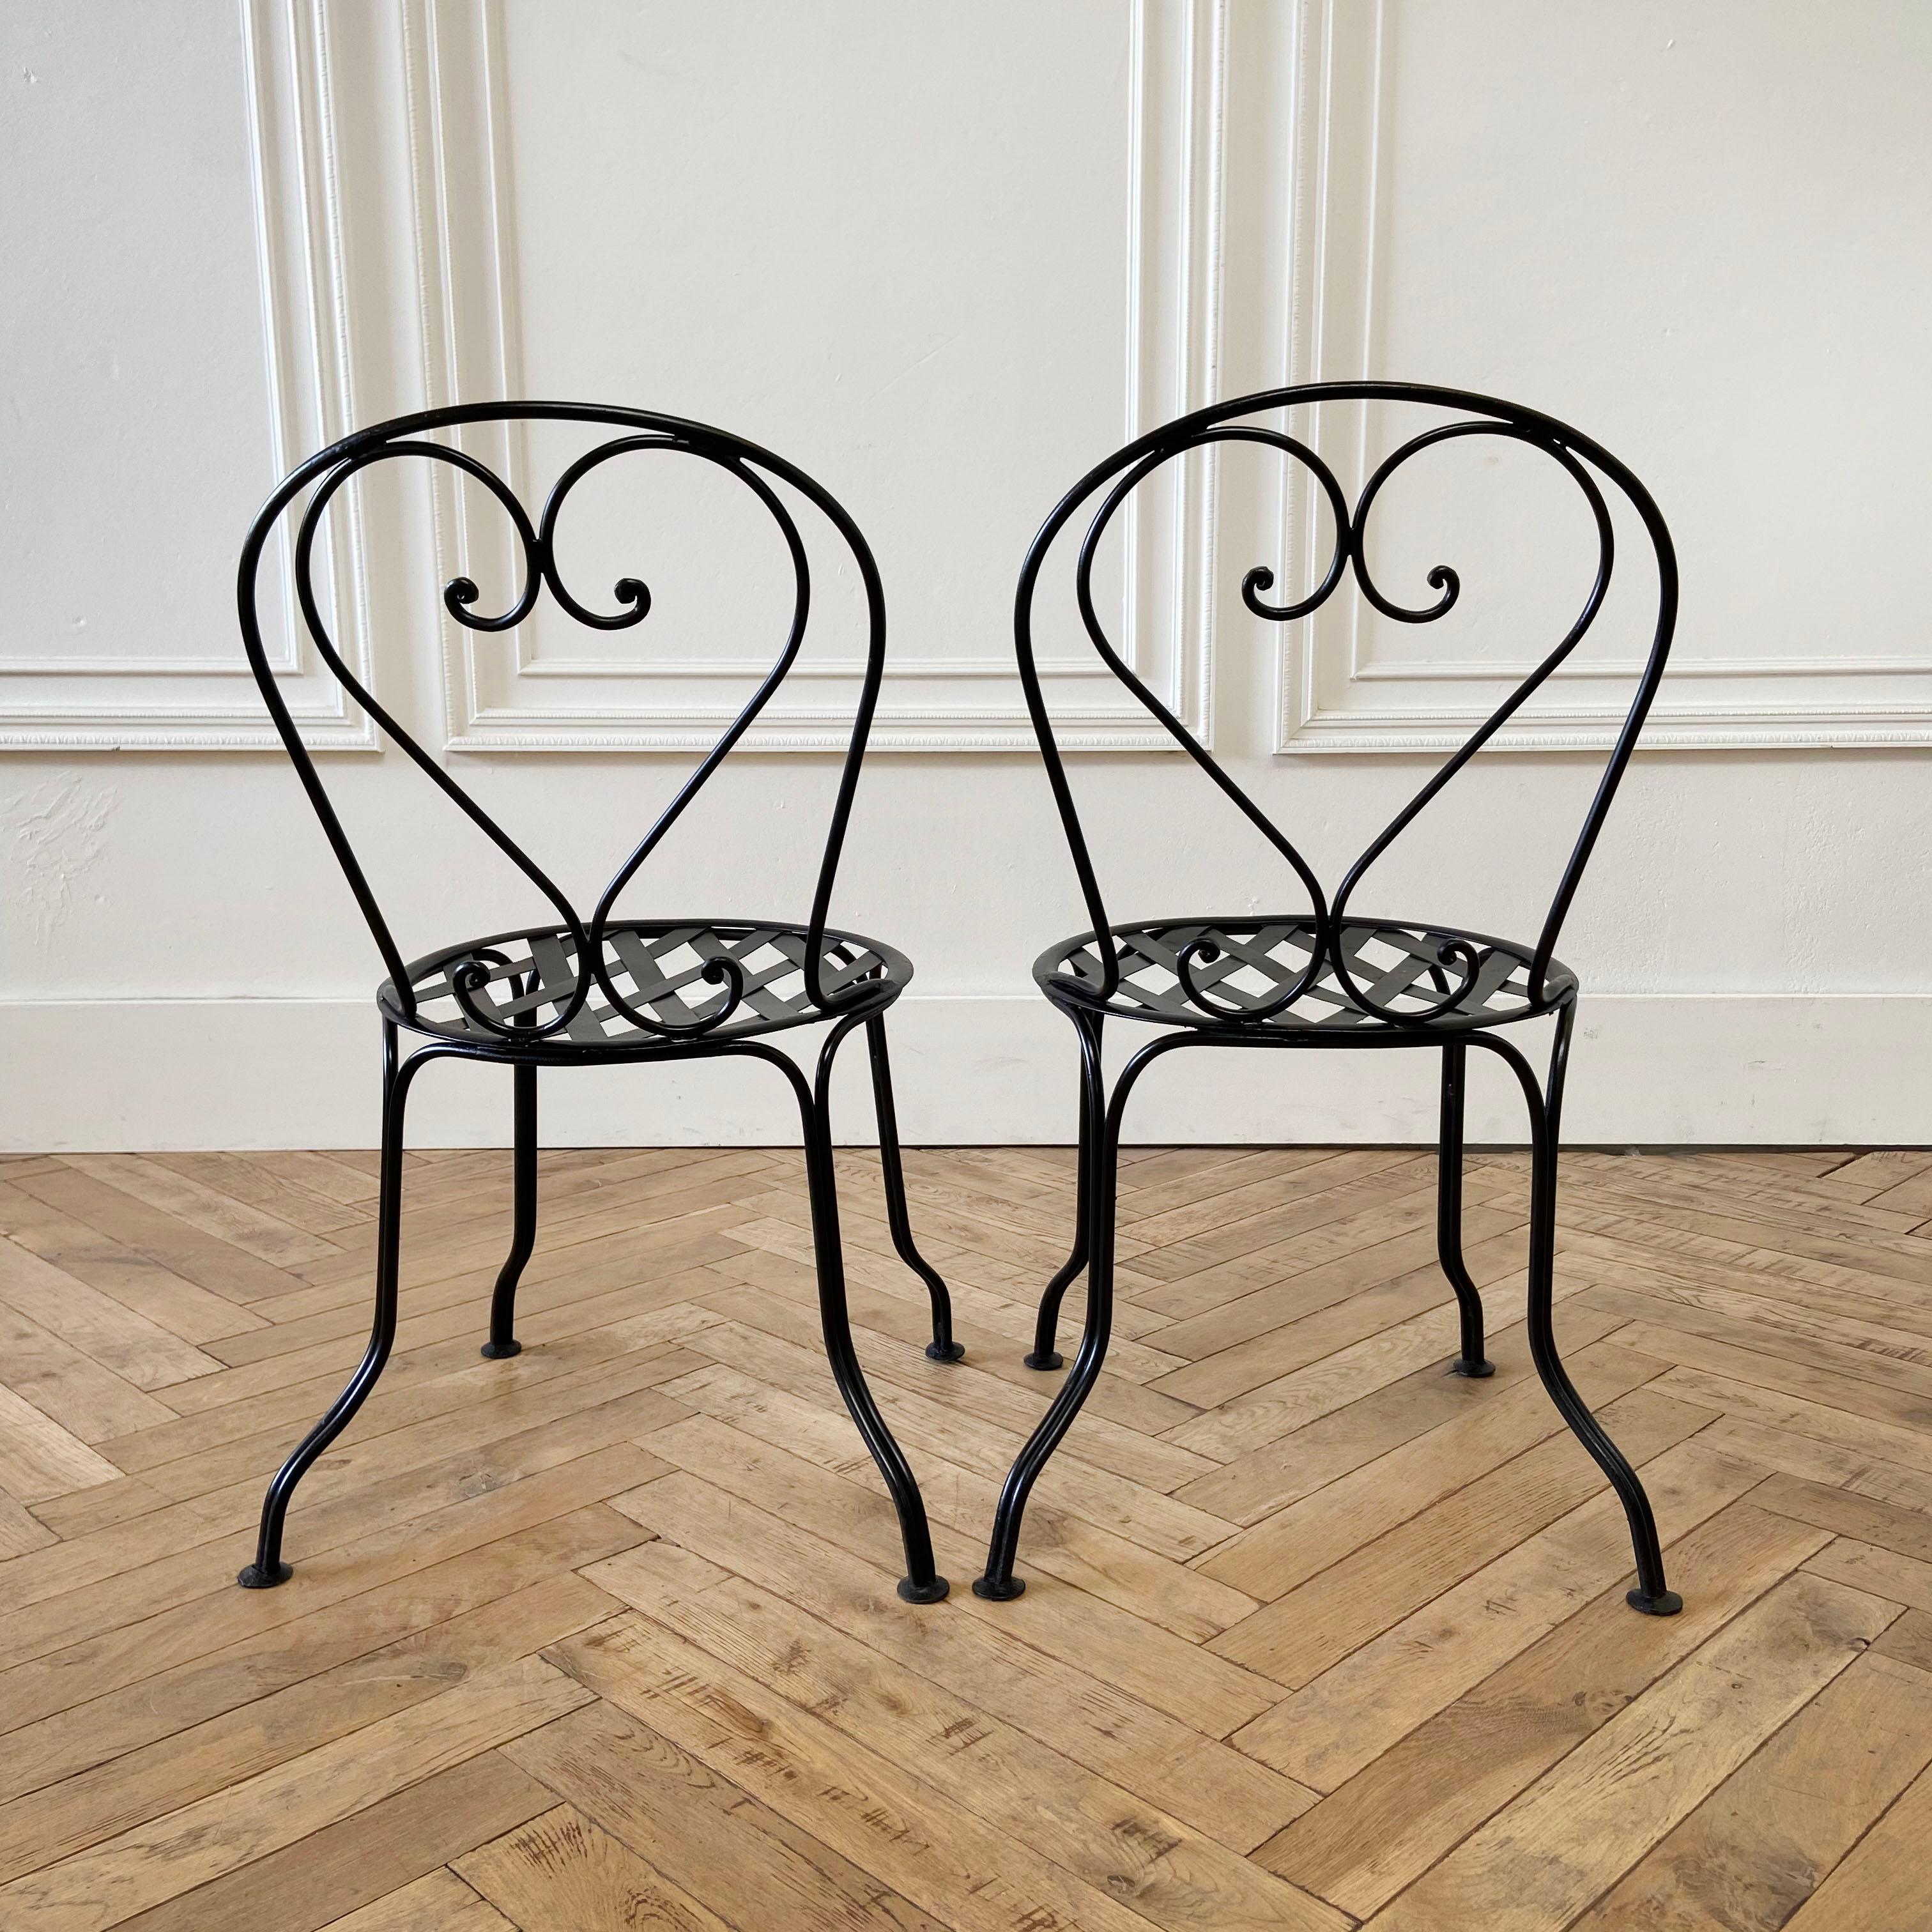 Vieille paire de chaises bistro de style français en fer noir

Mesures : 19